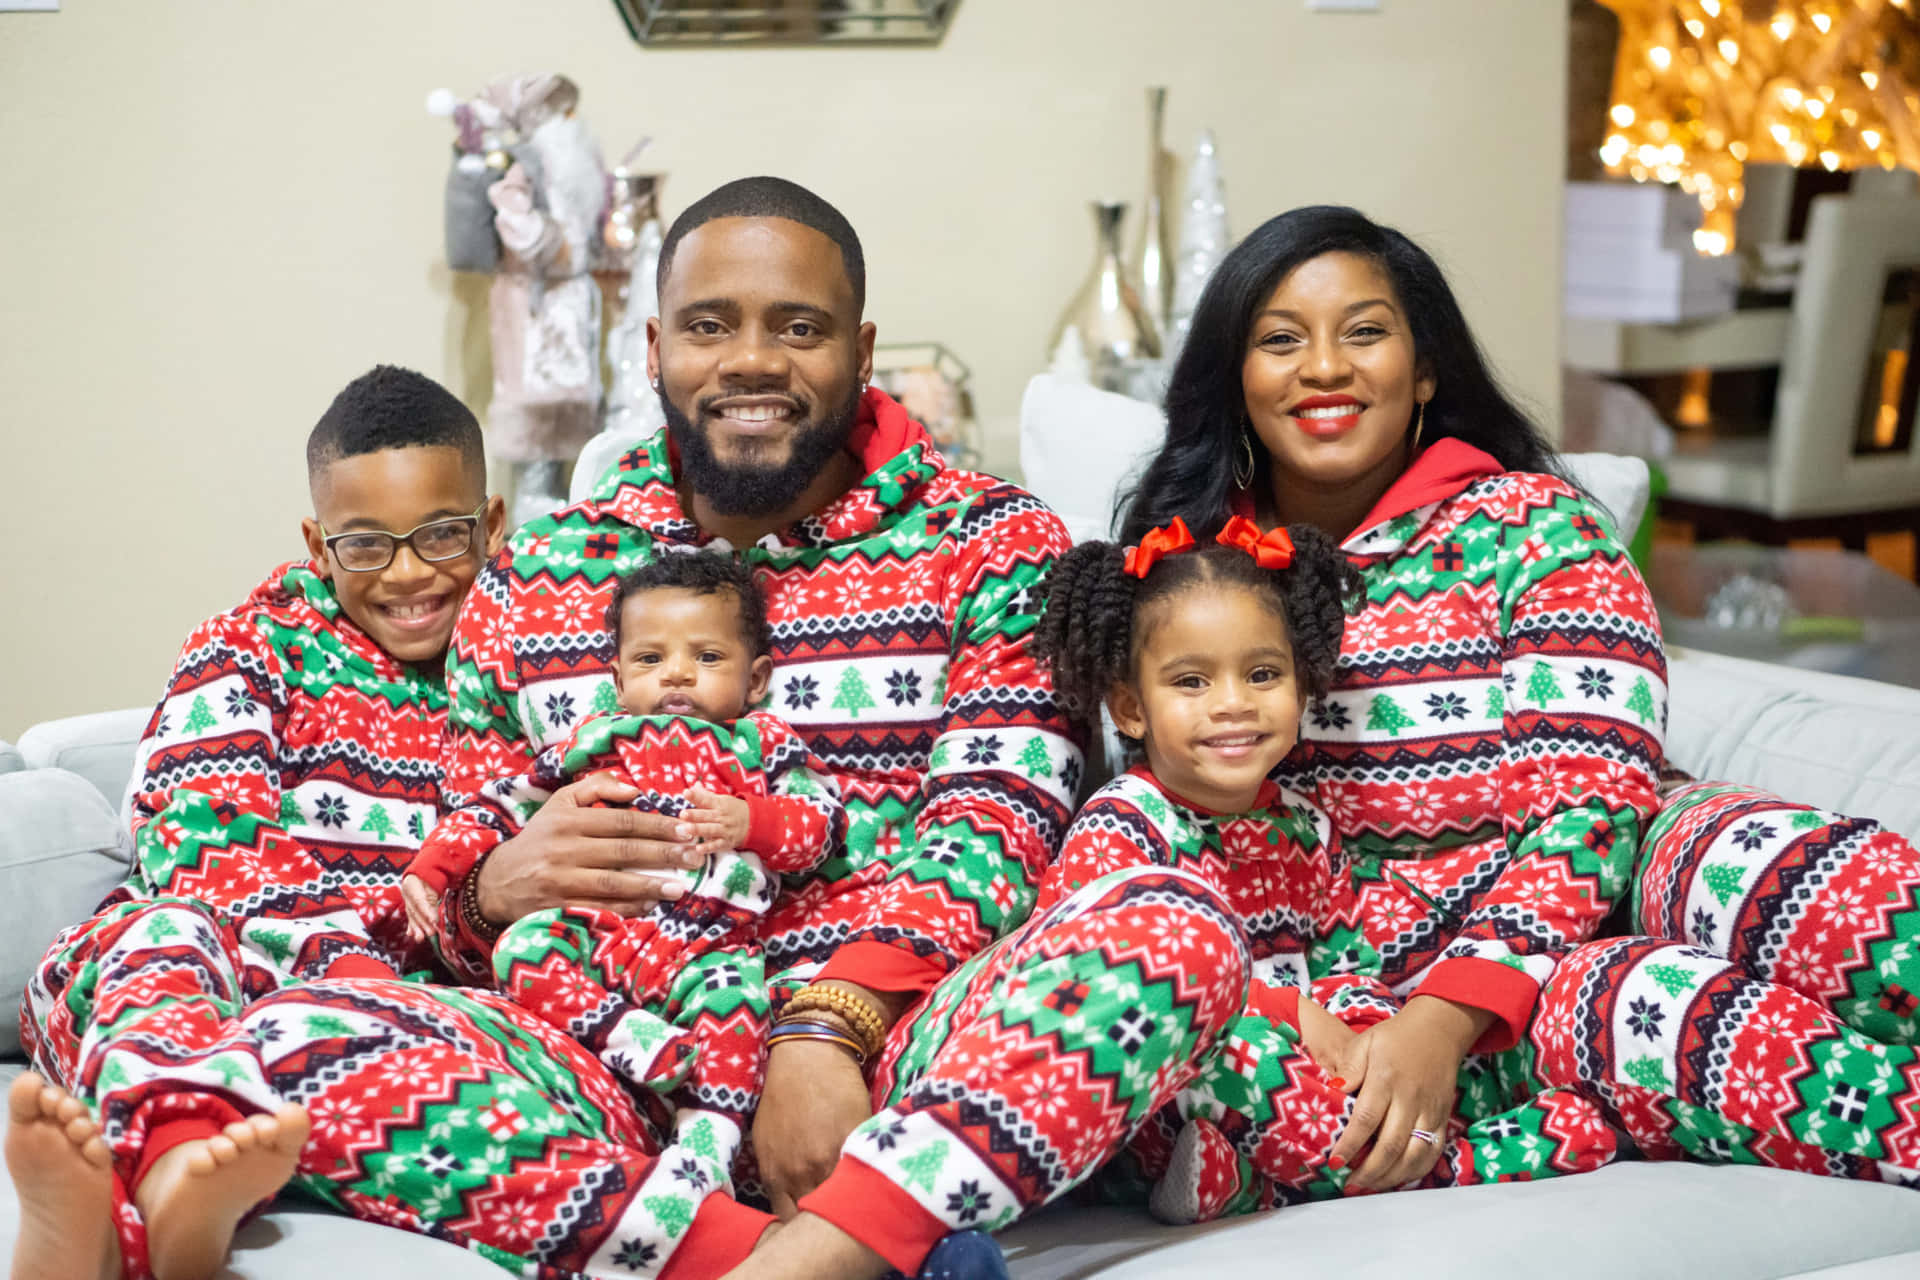 Caption: Joyful Black Family Celebrating Christmas Together